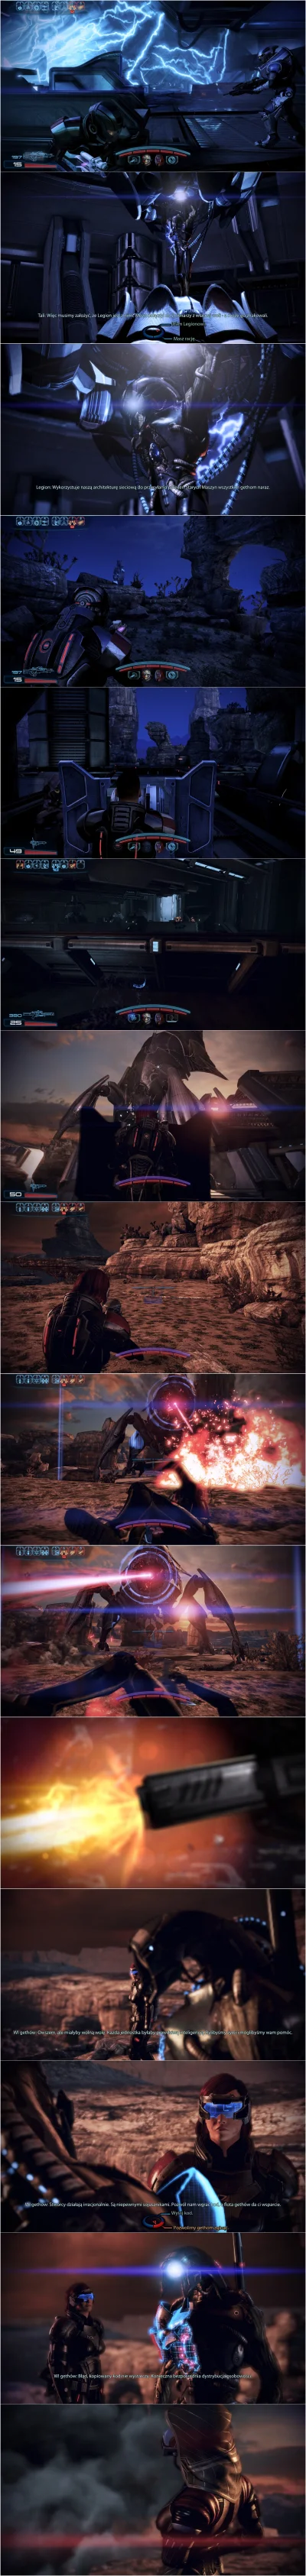 Lisaros - Mass Effect 3 i BioWare - NAJBARDZIEJ GORĄCA SERIA WPISÓW NA TAGU!

Około...